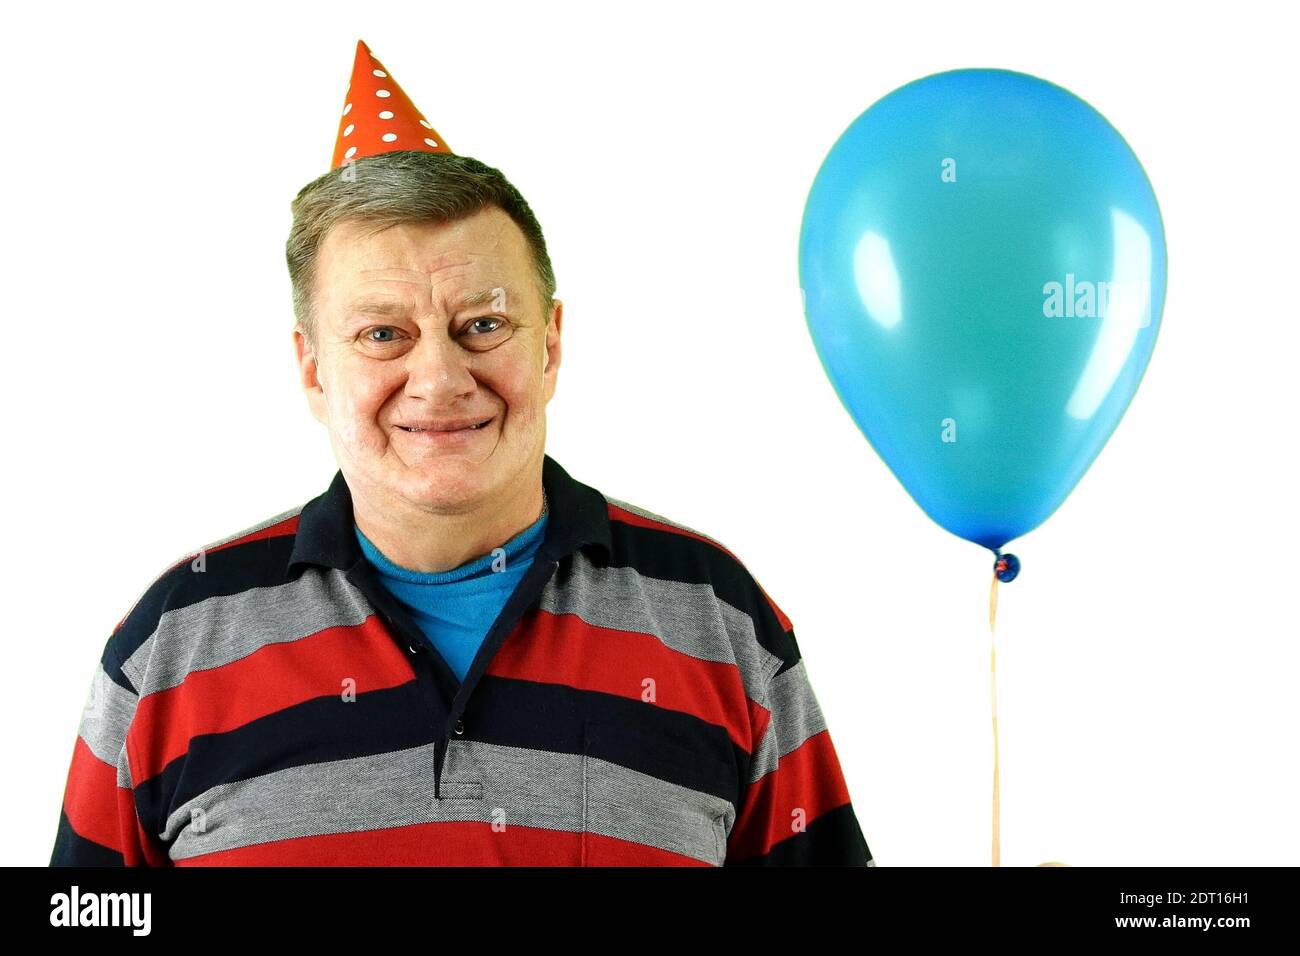 Reifer erwachsener Mann kaukasischer Ethnie in lässiger Kleidung und Geburtstagsmütze mit Luft Helium Ballon, lächelnd und frohlockend. Auf weißem Hintergrund ausschneiden Stockfoto